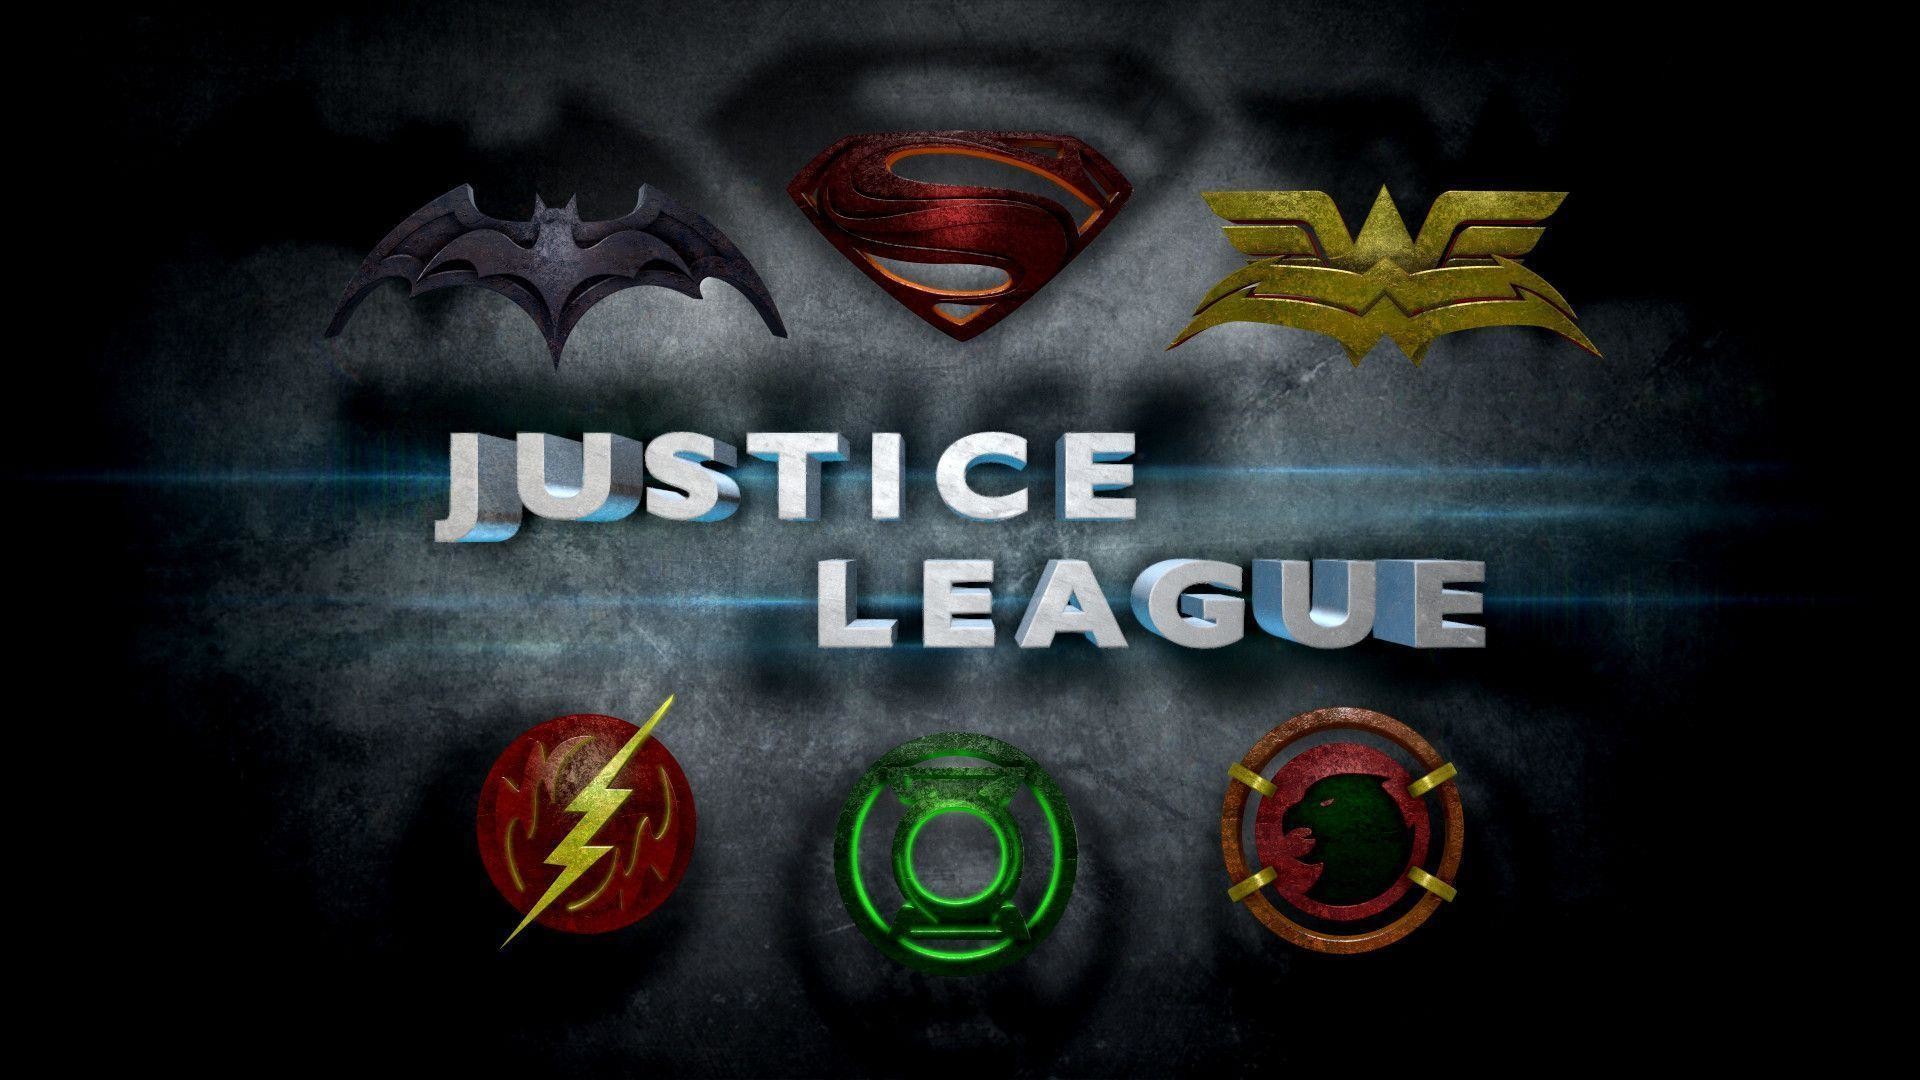 1920x1080 Justice League Logo Wallpaper - WallpaperSafari